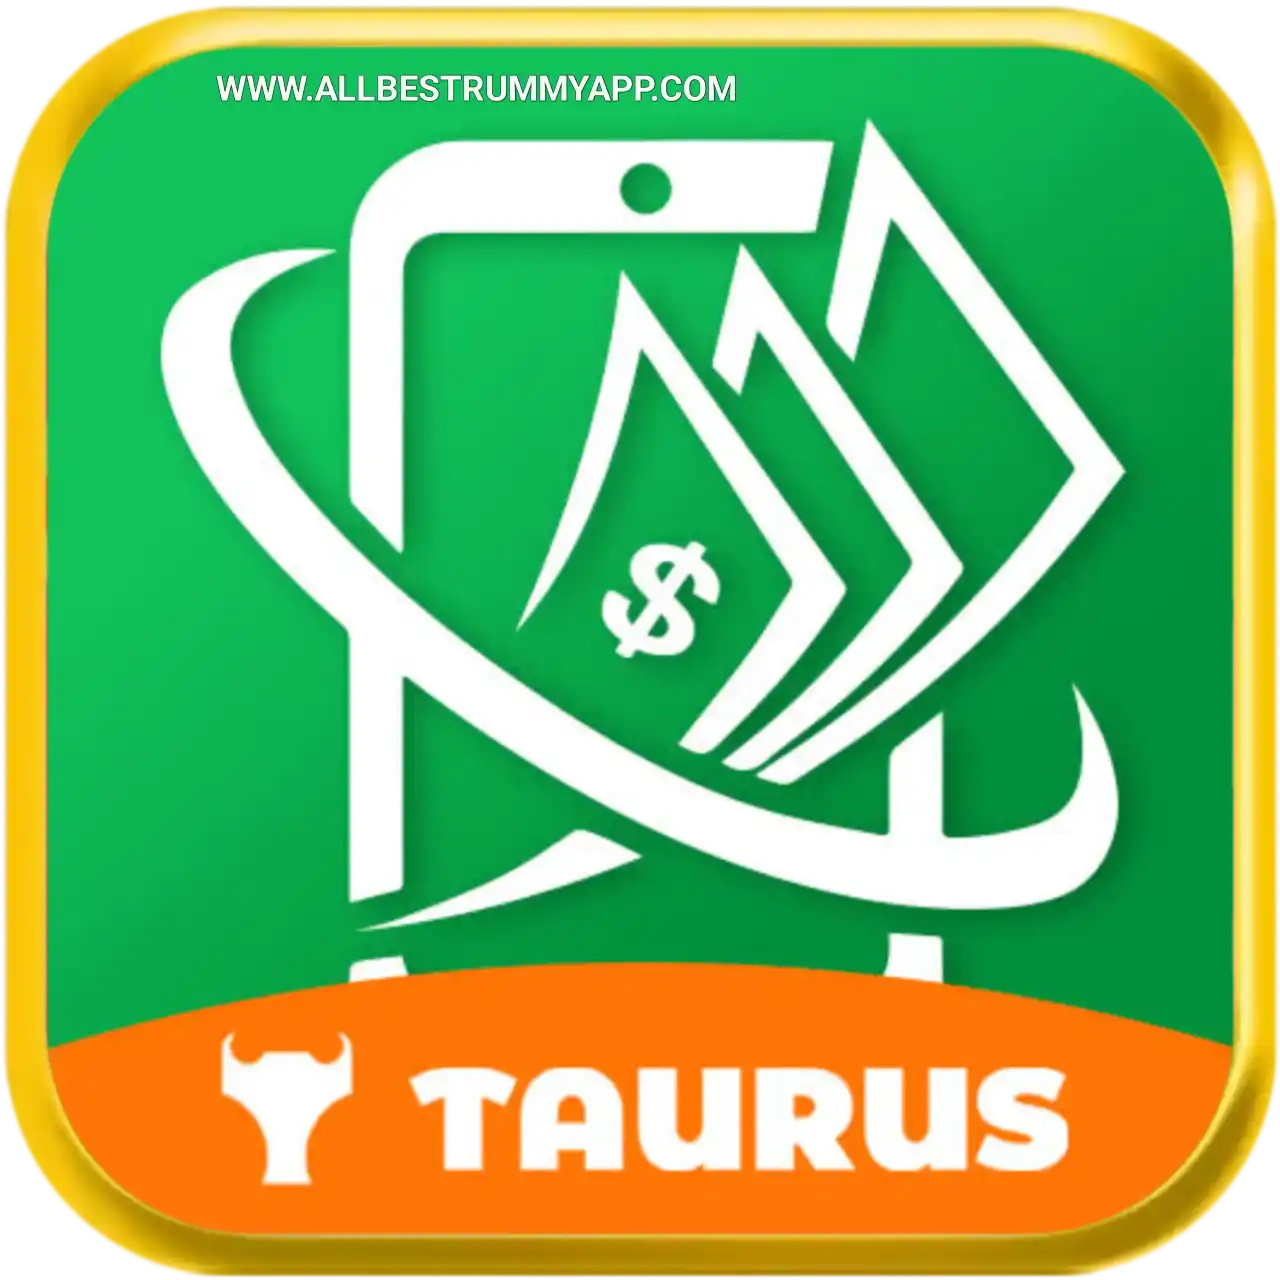 Taurus Cash - All Rummy App